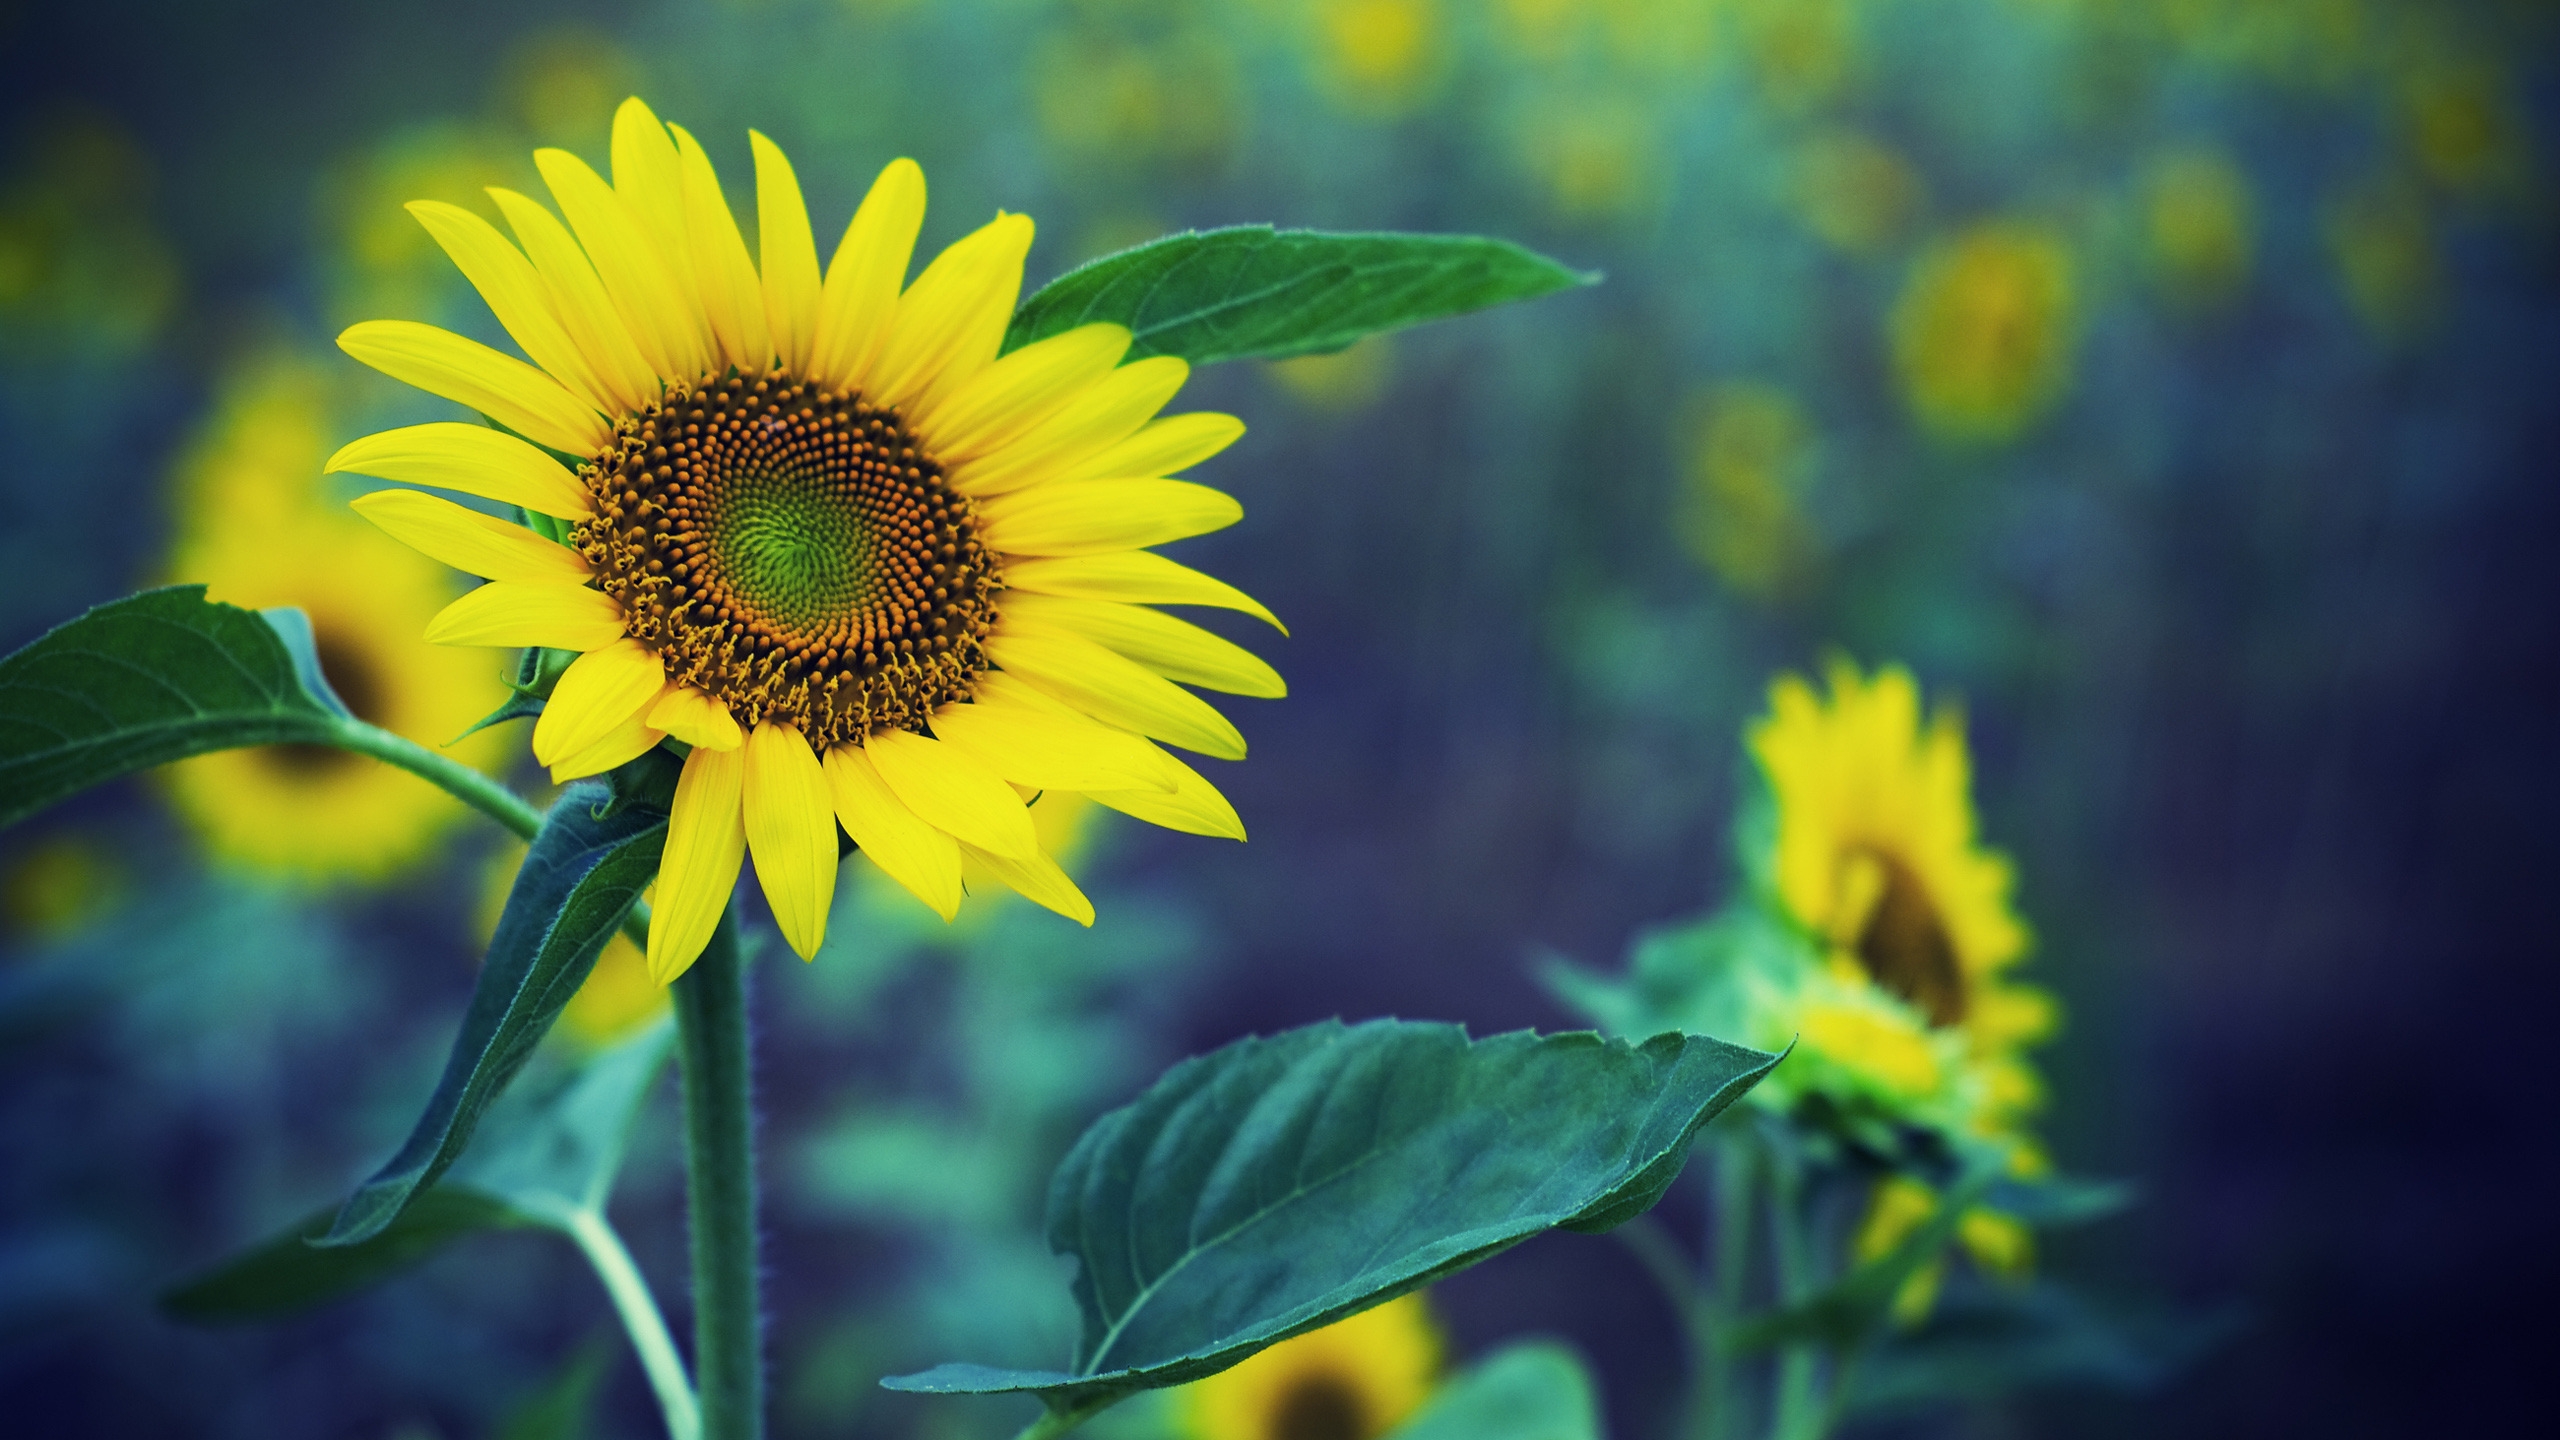 Sunflower HDR for 2560x1440 HDTV resolution